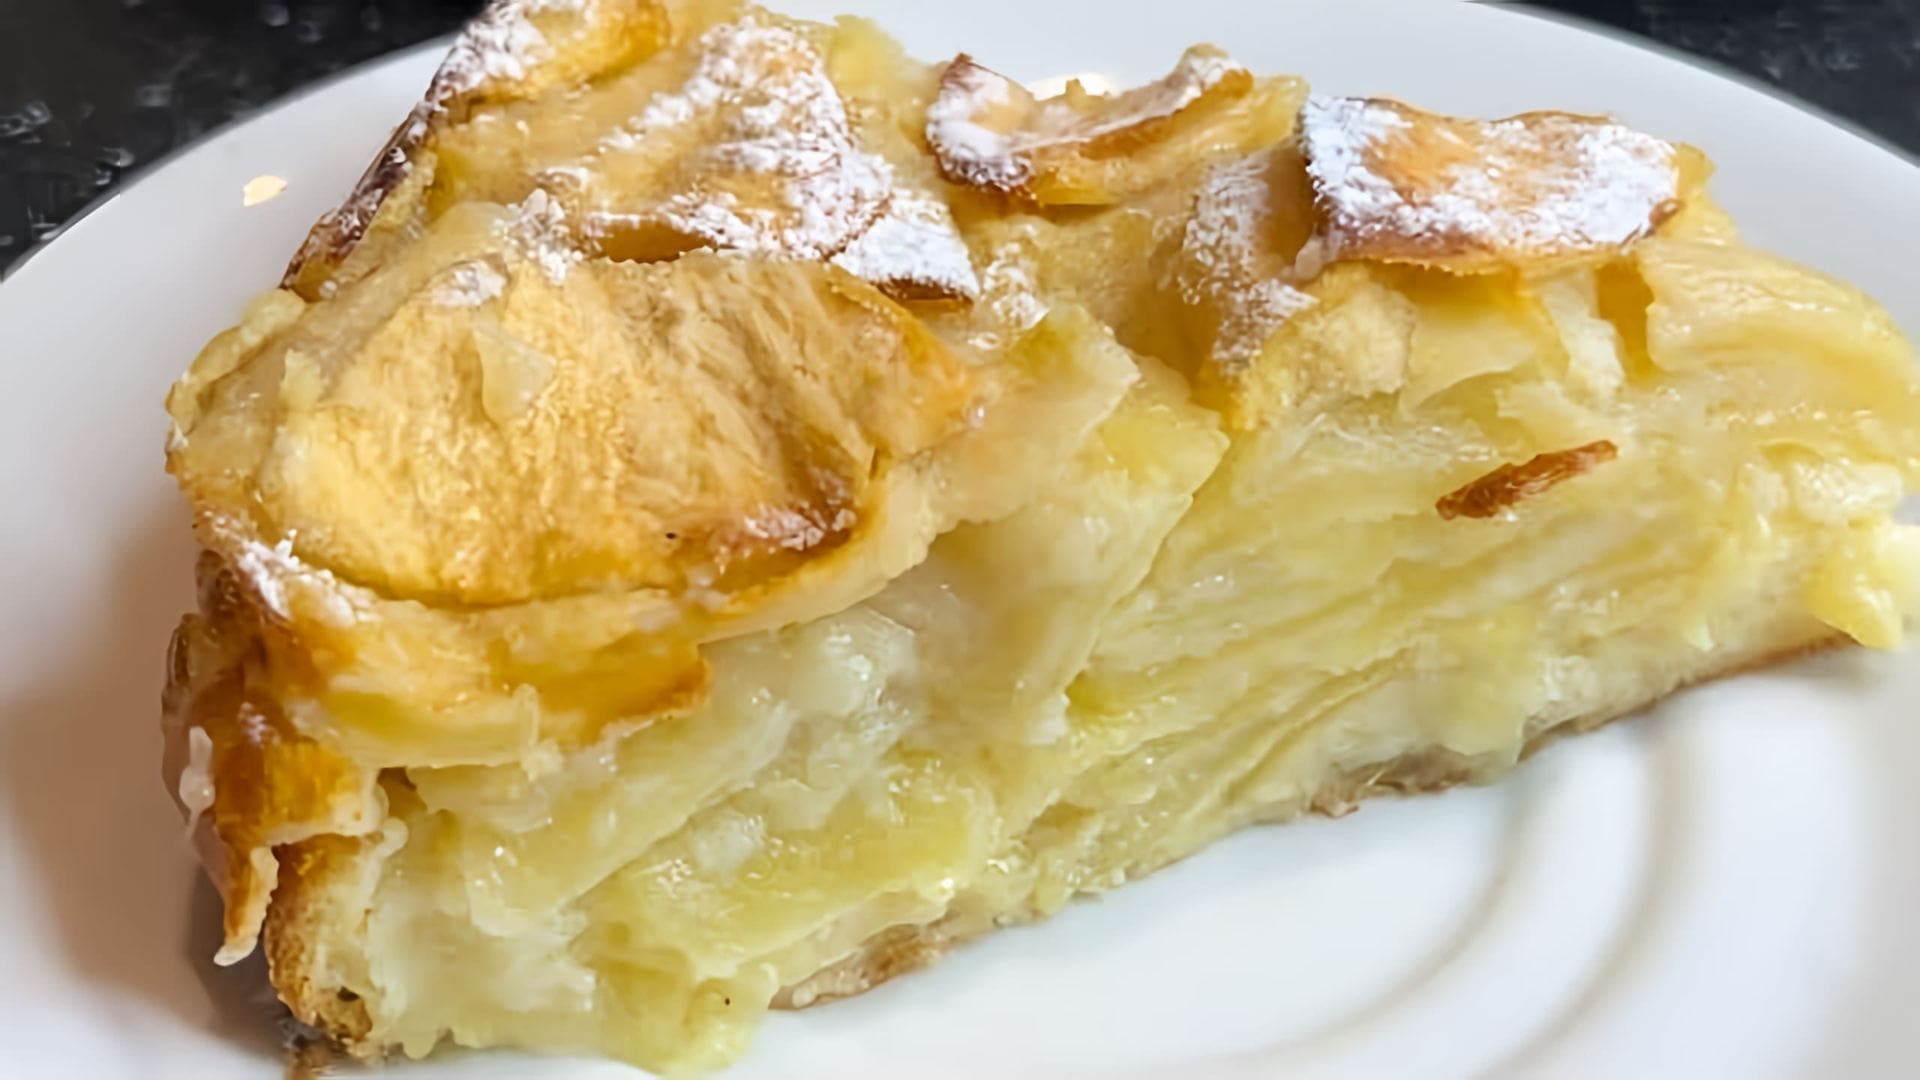 В этом видео демонстрируется рецепт приготовления французского невидимого яблочного пирога